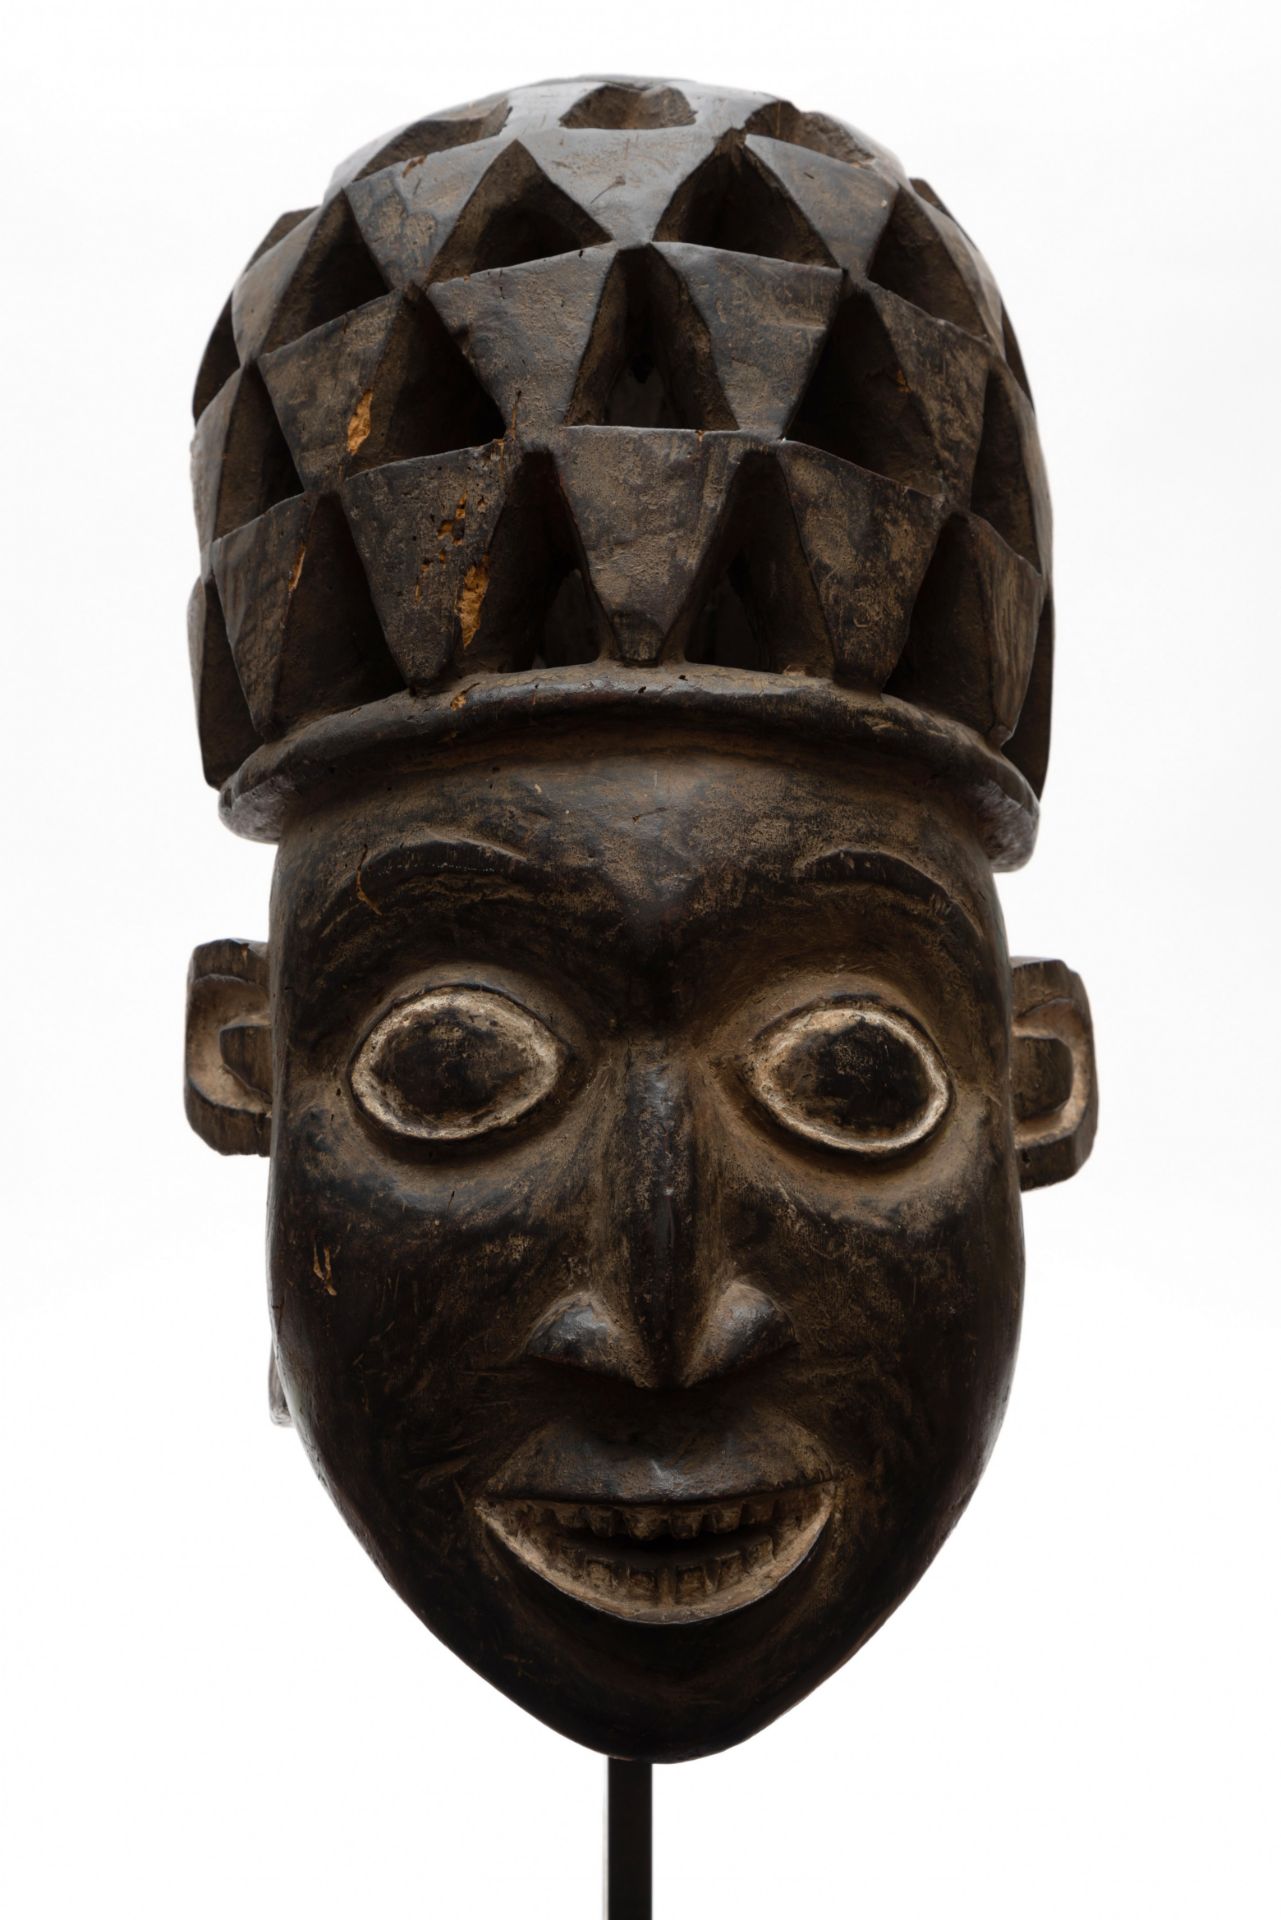 Cameroon, Grasslands, Bamileke, helmet mask, - Image 2 of 8